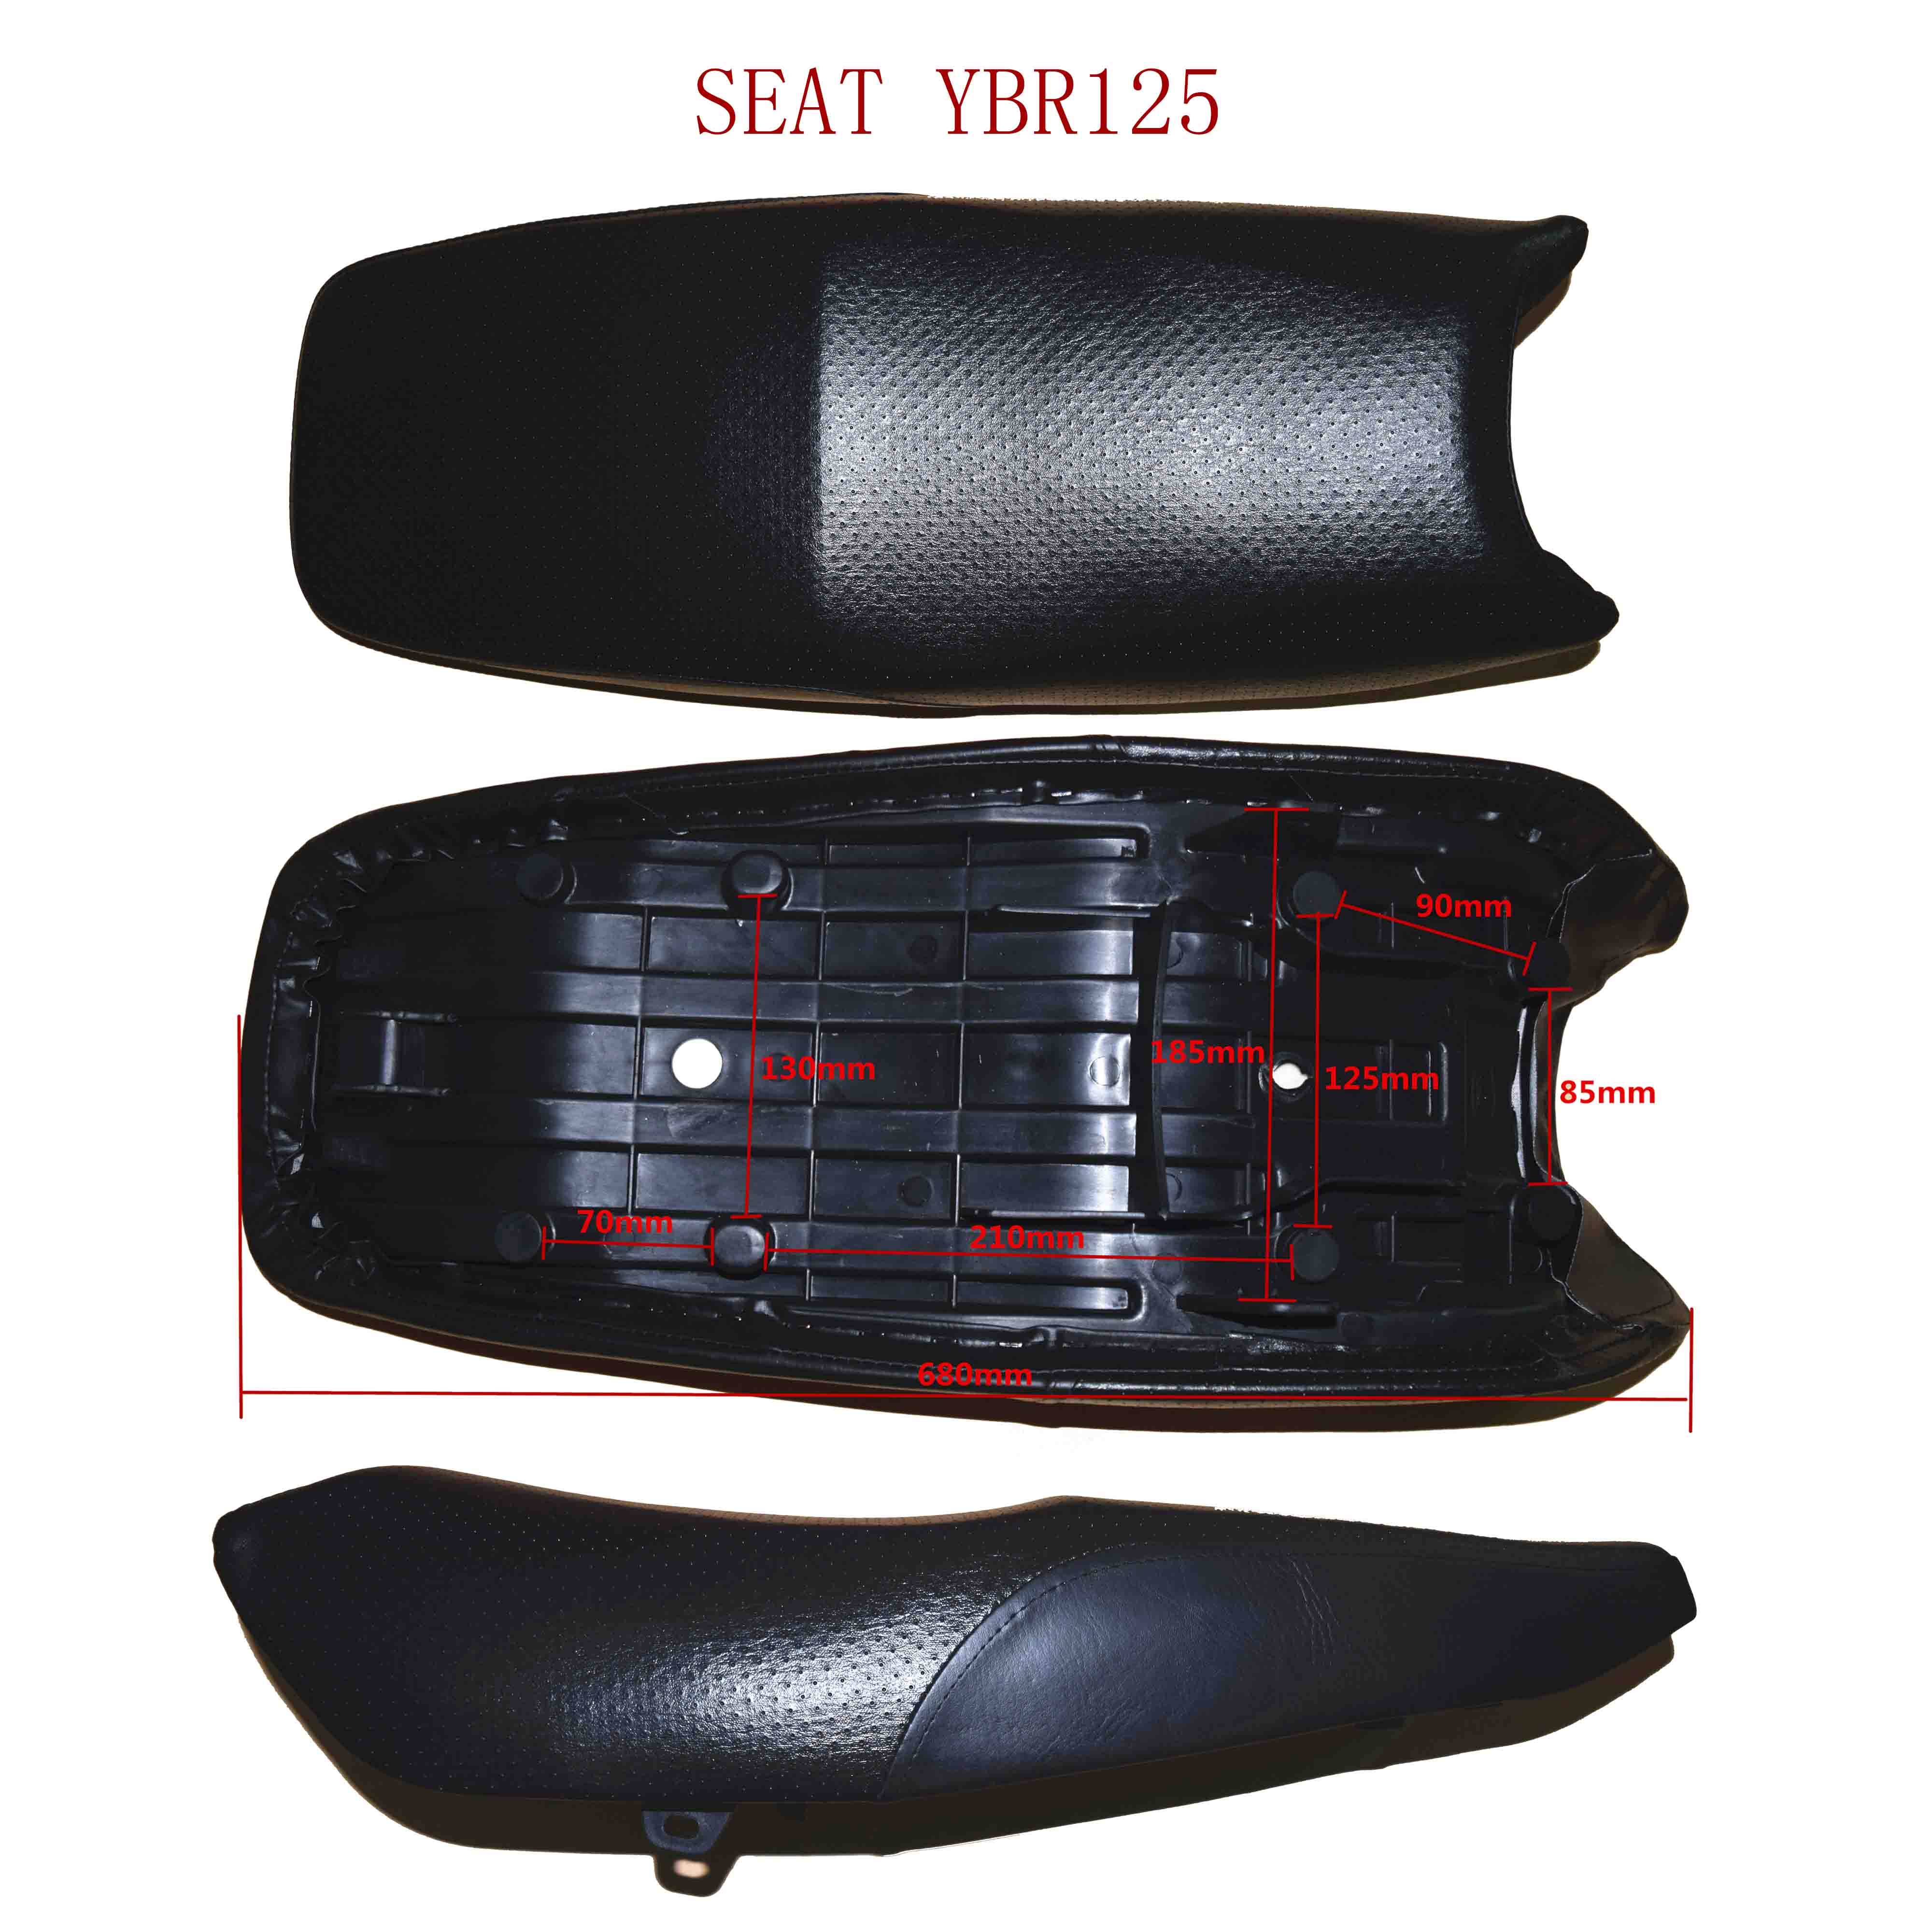 SEAT YBR125 